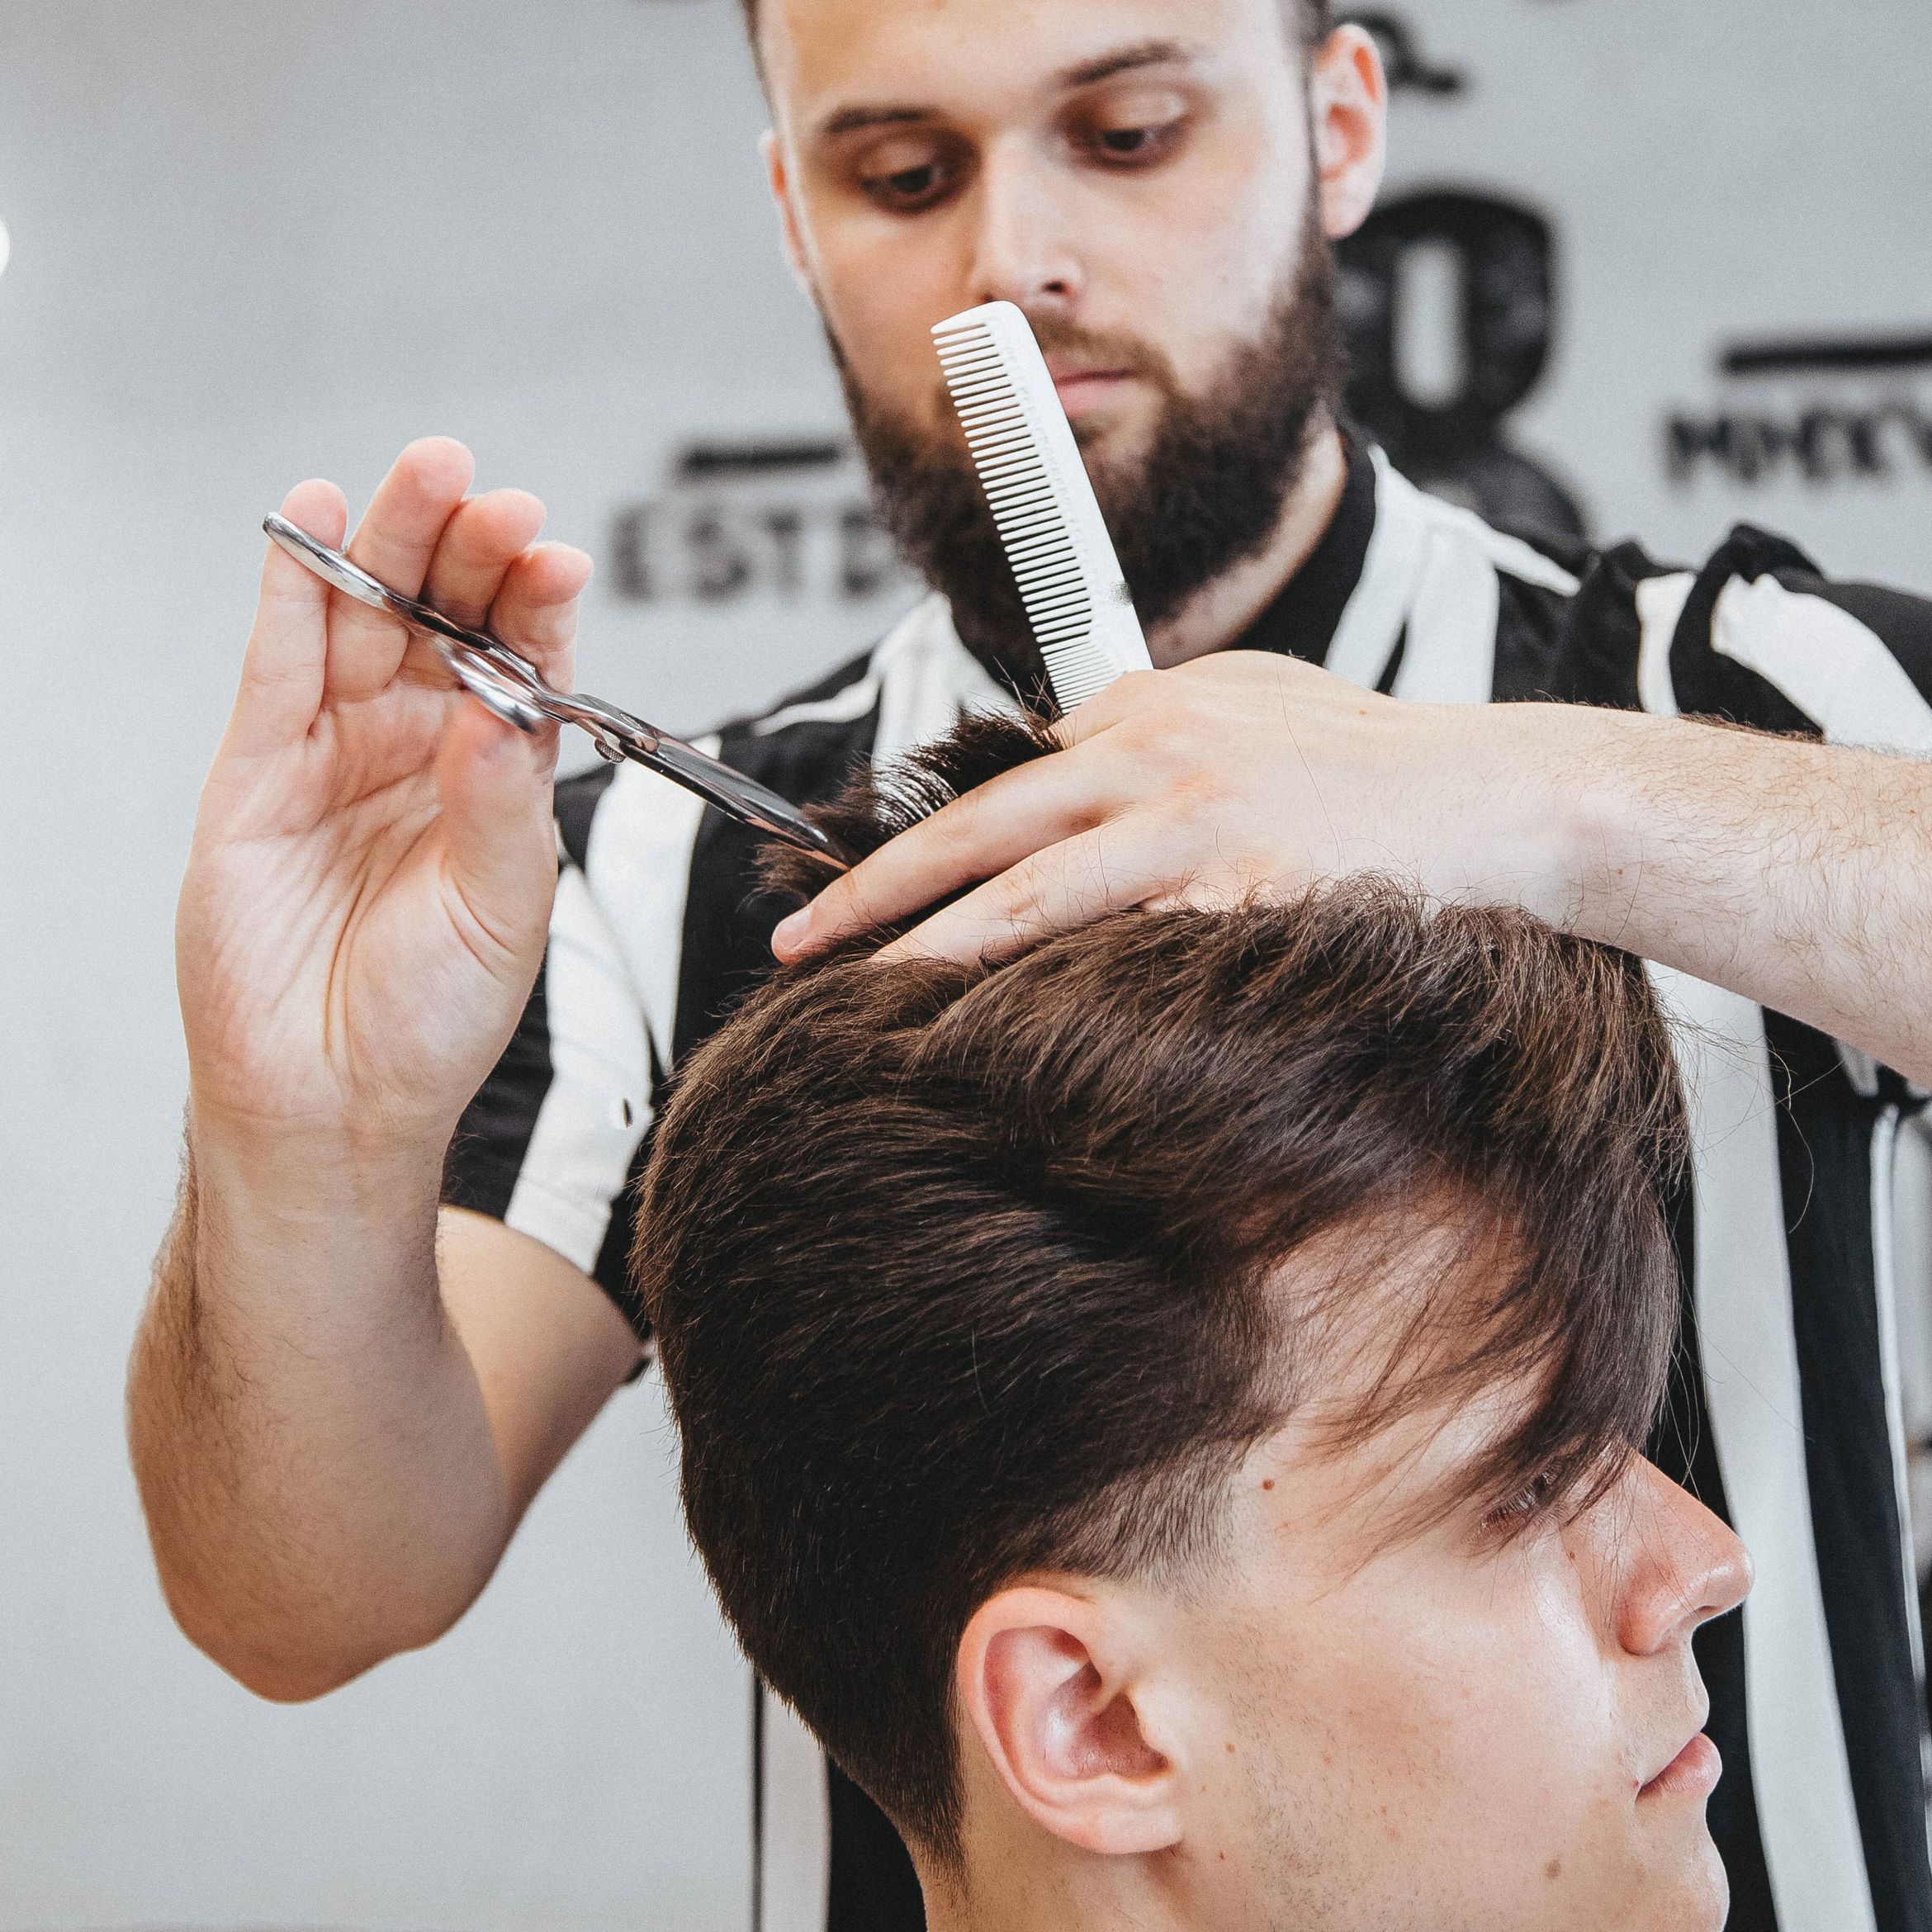 Portfolio usługi Strzyżenie / Haircut / Мужская стрижка